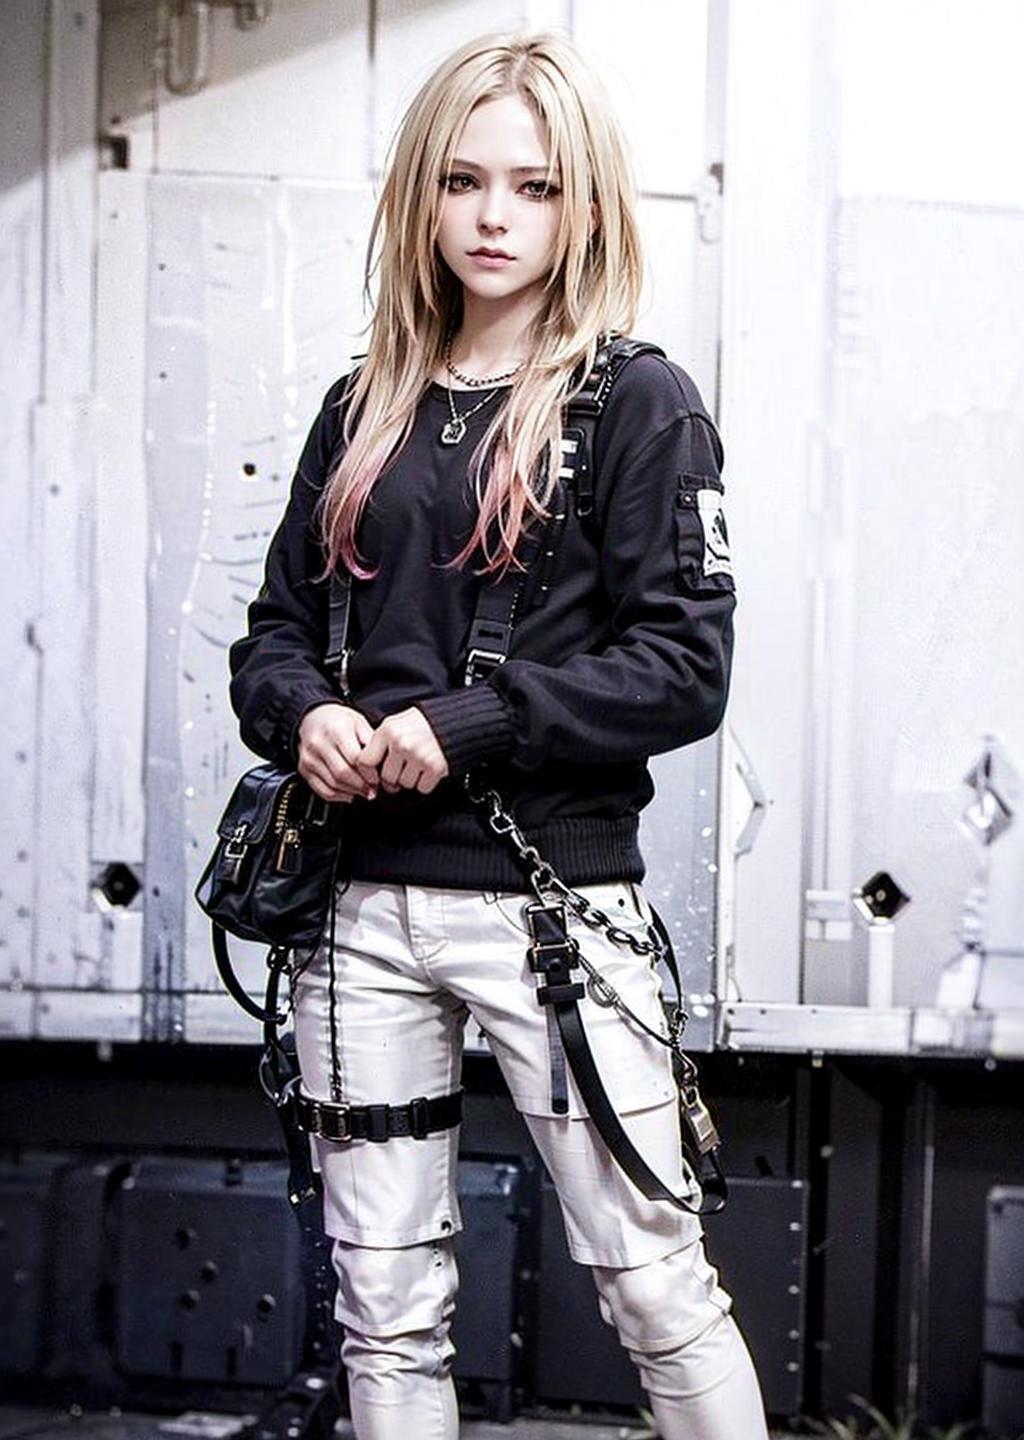 Avril Lavigne LoRA image by wangyongzhi1984